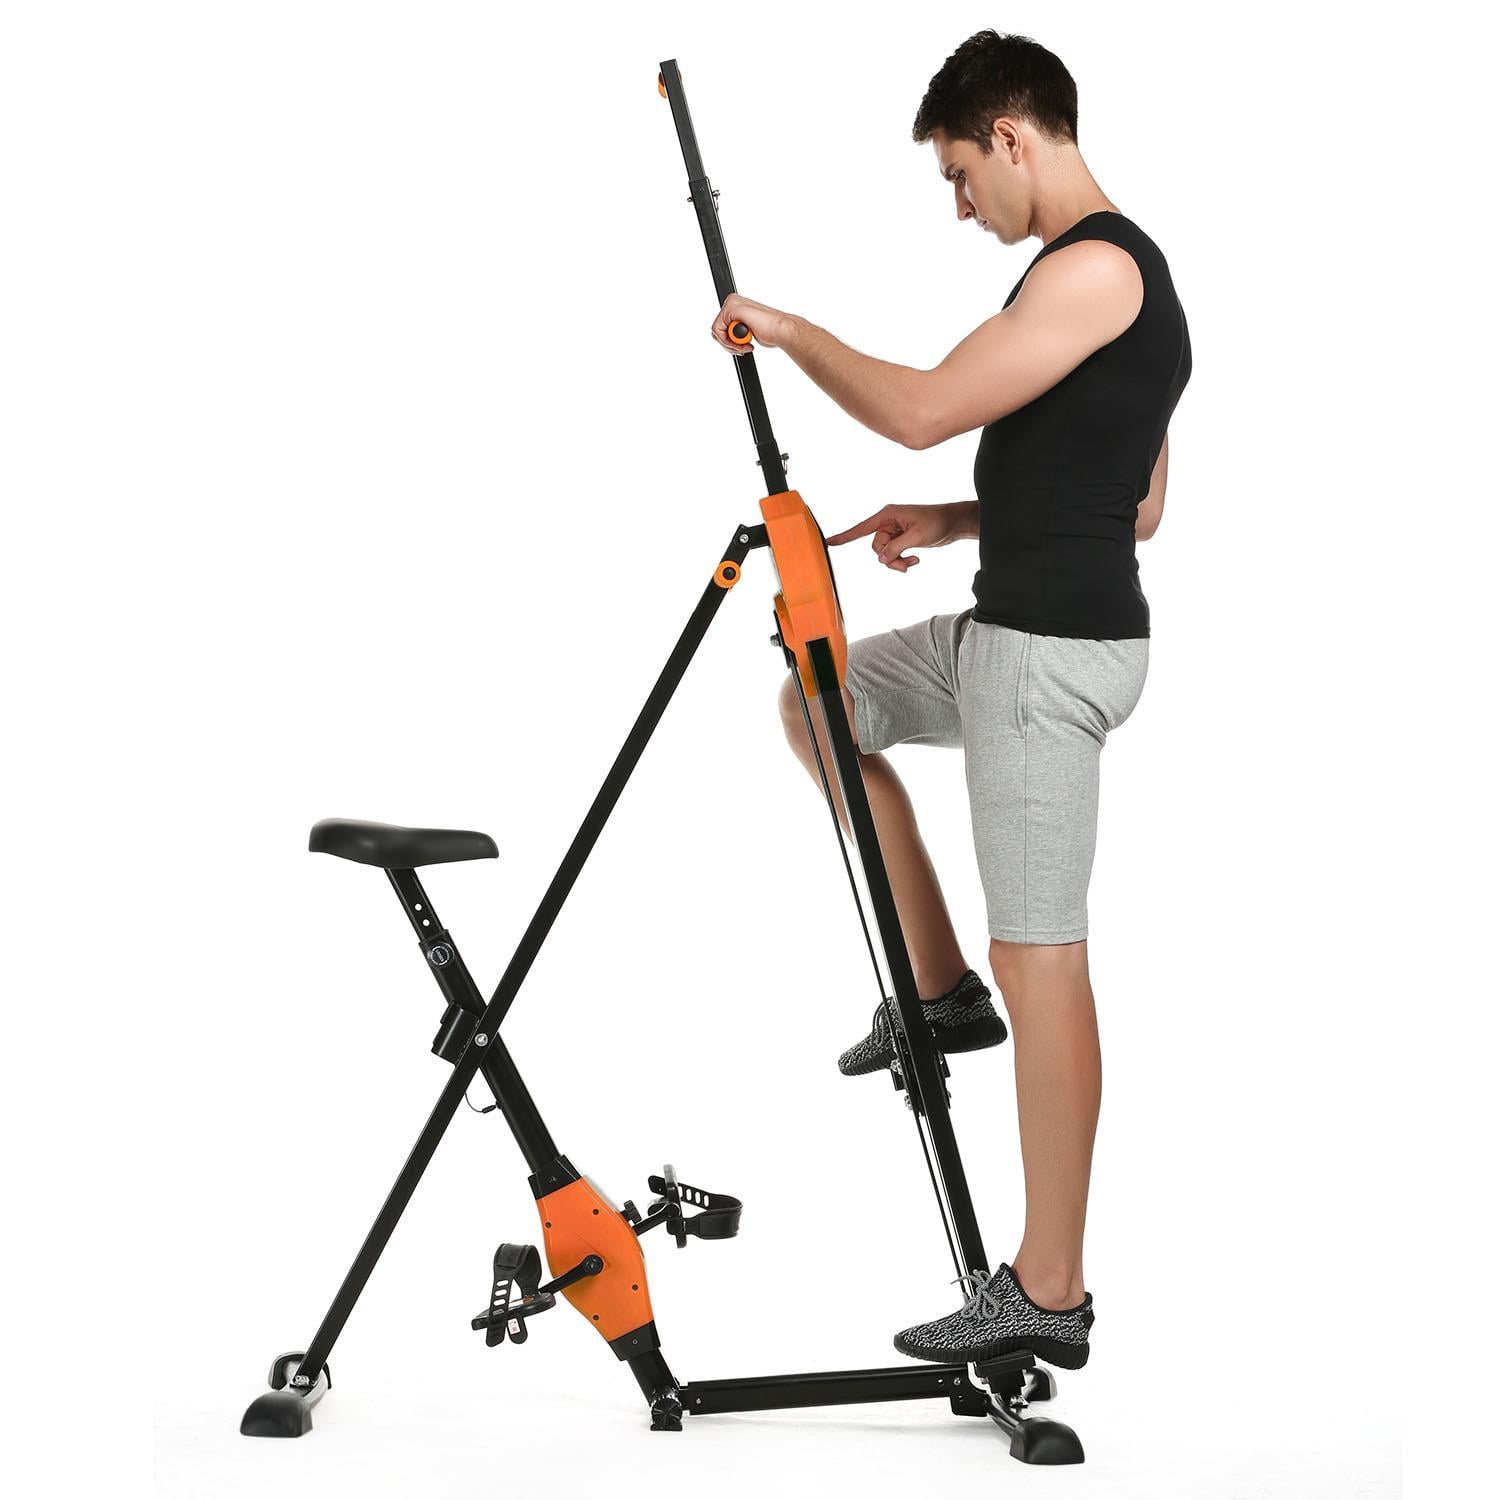 Vertical Maxi Climber Climbing Workout Fitness Stepper Cardio Machine Equipment 